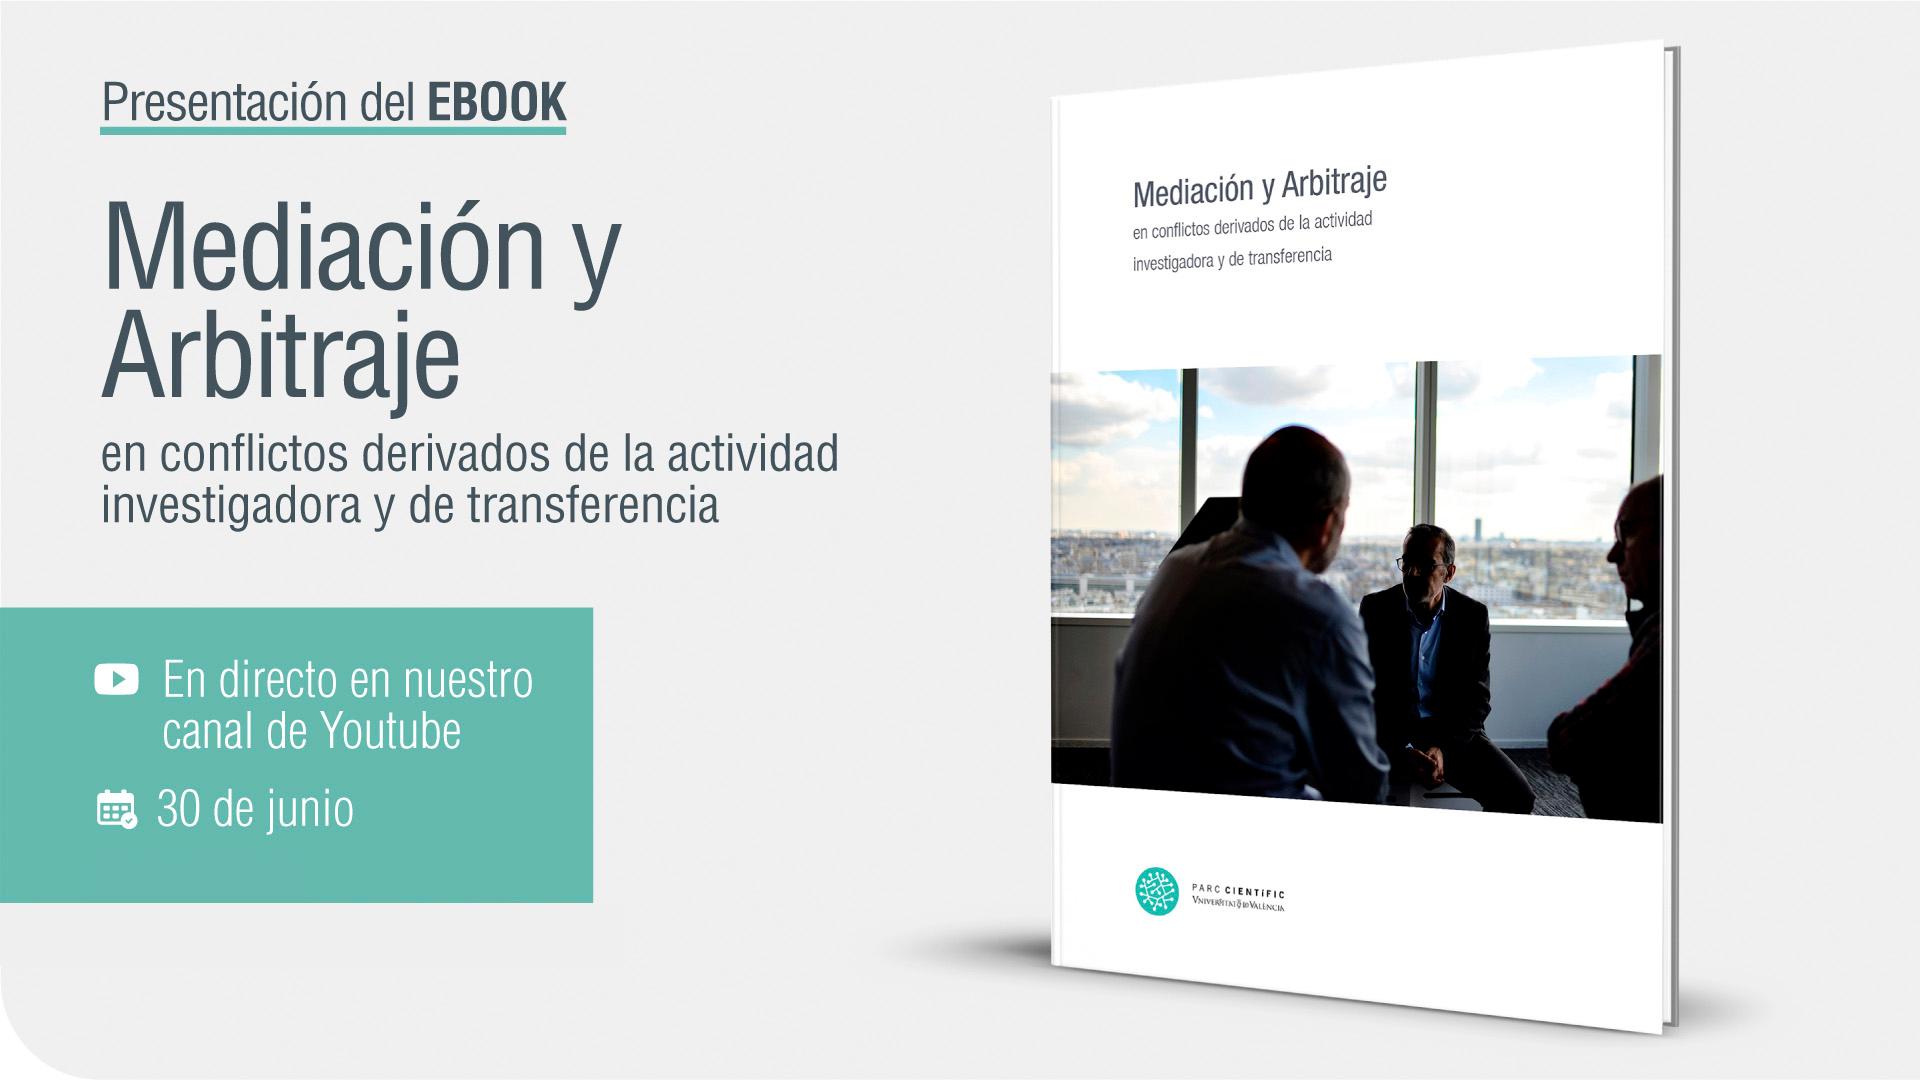 Presentació de l'ebook 'Mediación y Arbitraje en conflictos derivados de la actividad investigadora y de transferencia'